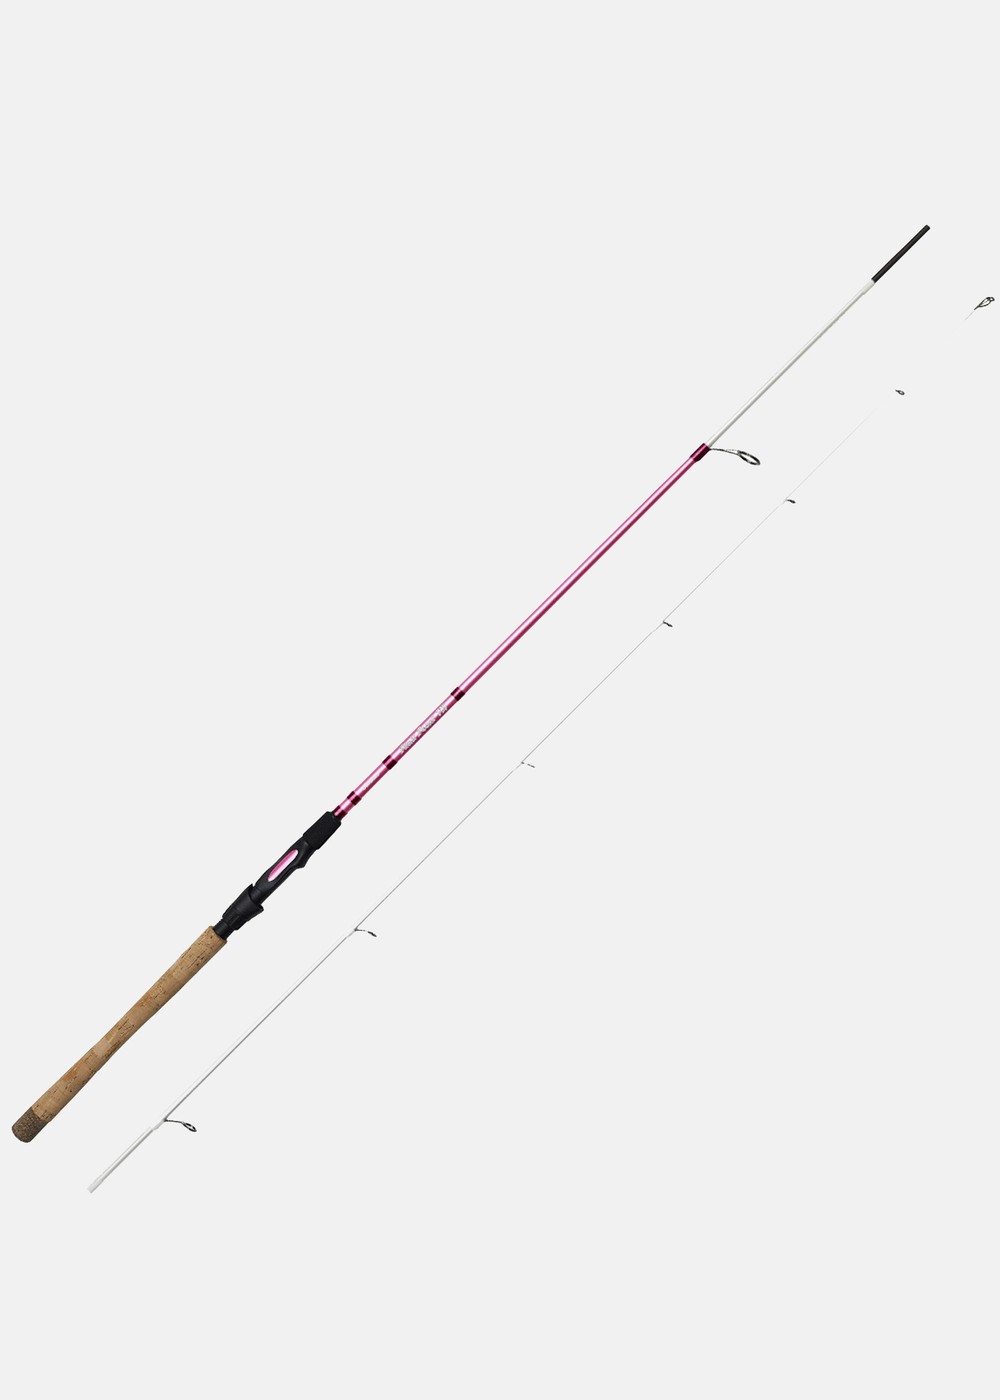 Okuma Pink Pearl Spinning Rod 8'2 10-32g